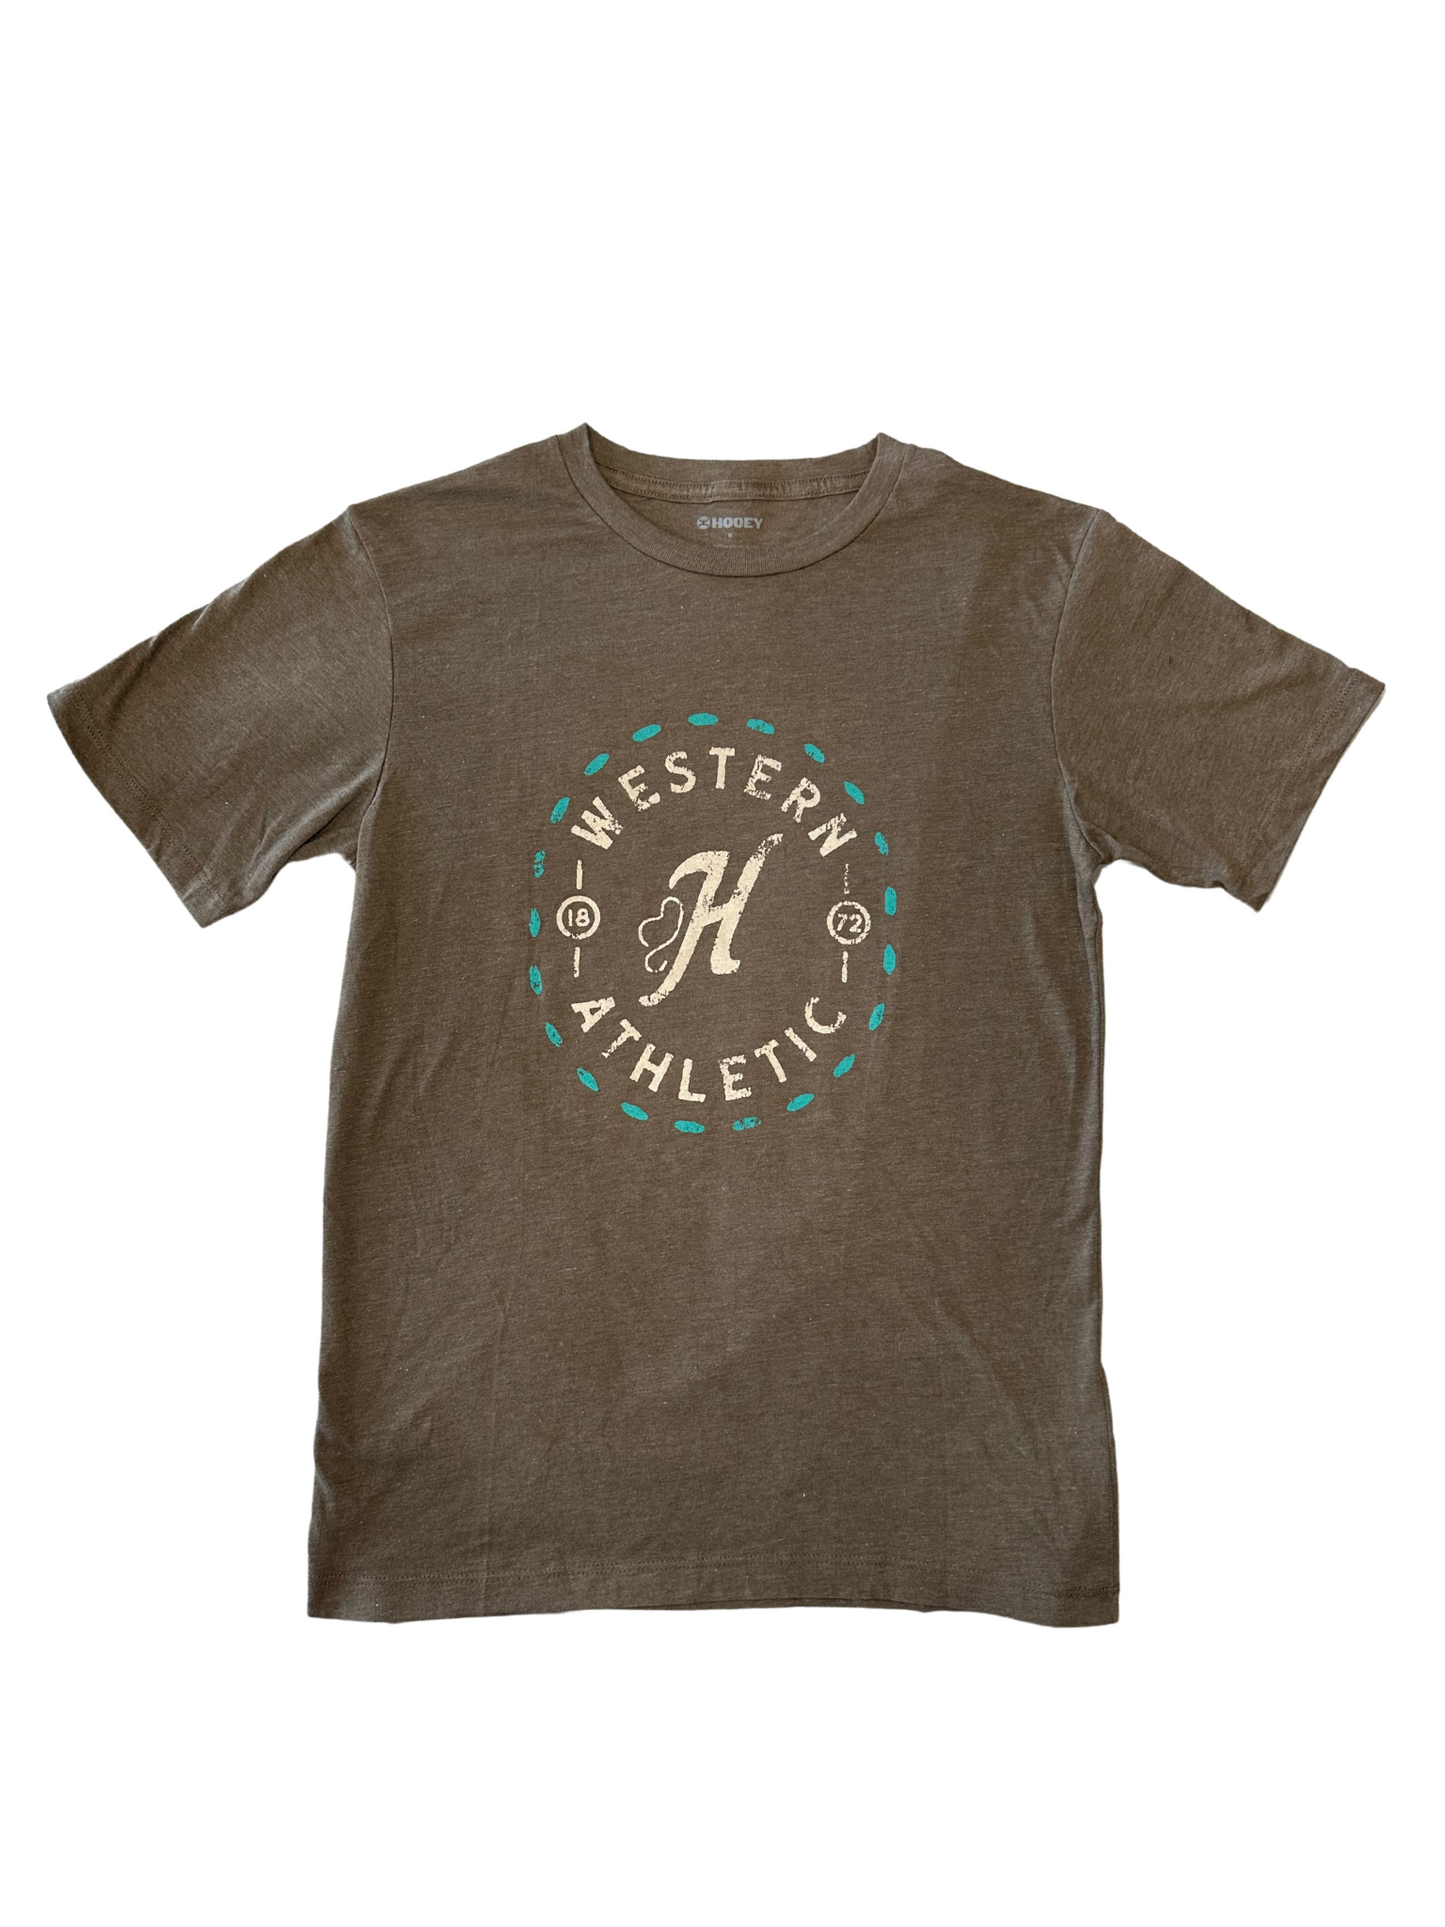 Hooey Western Athletic Brown T-Shirt